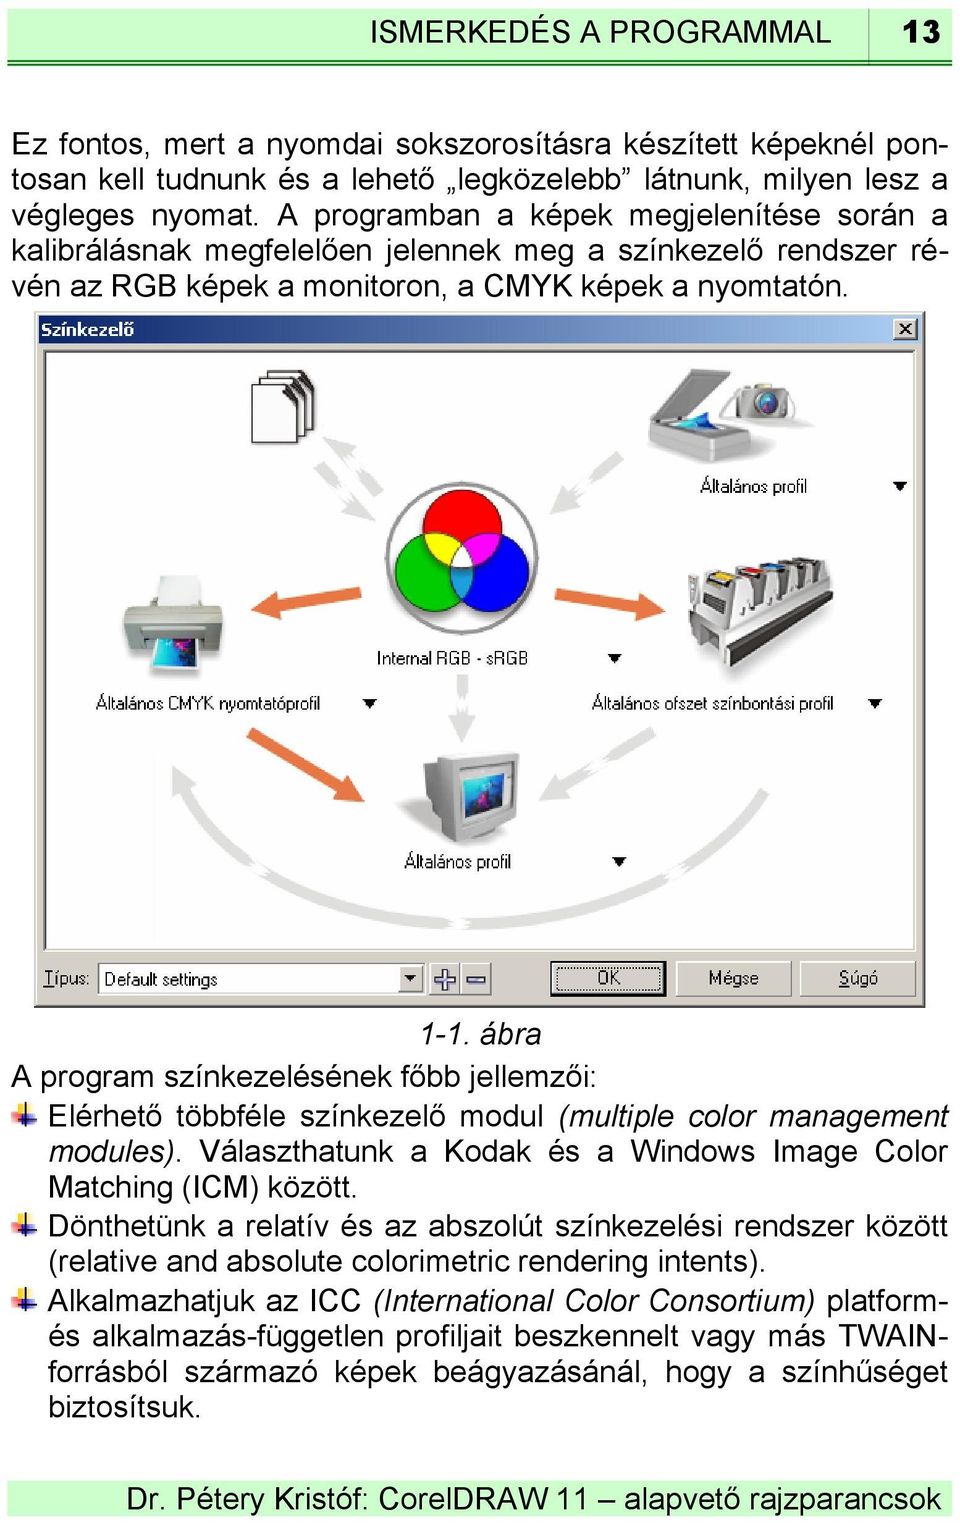 ábra A program színkezelésének főbb jellemzői: Elérhető többféle színkezelő modul (multiple color management modules). Választhatunk a Kodak és a Windows Image Color Matching (ICM) között.